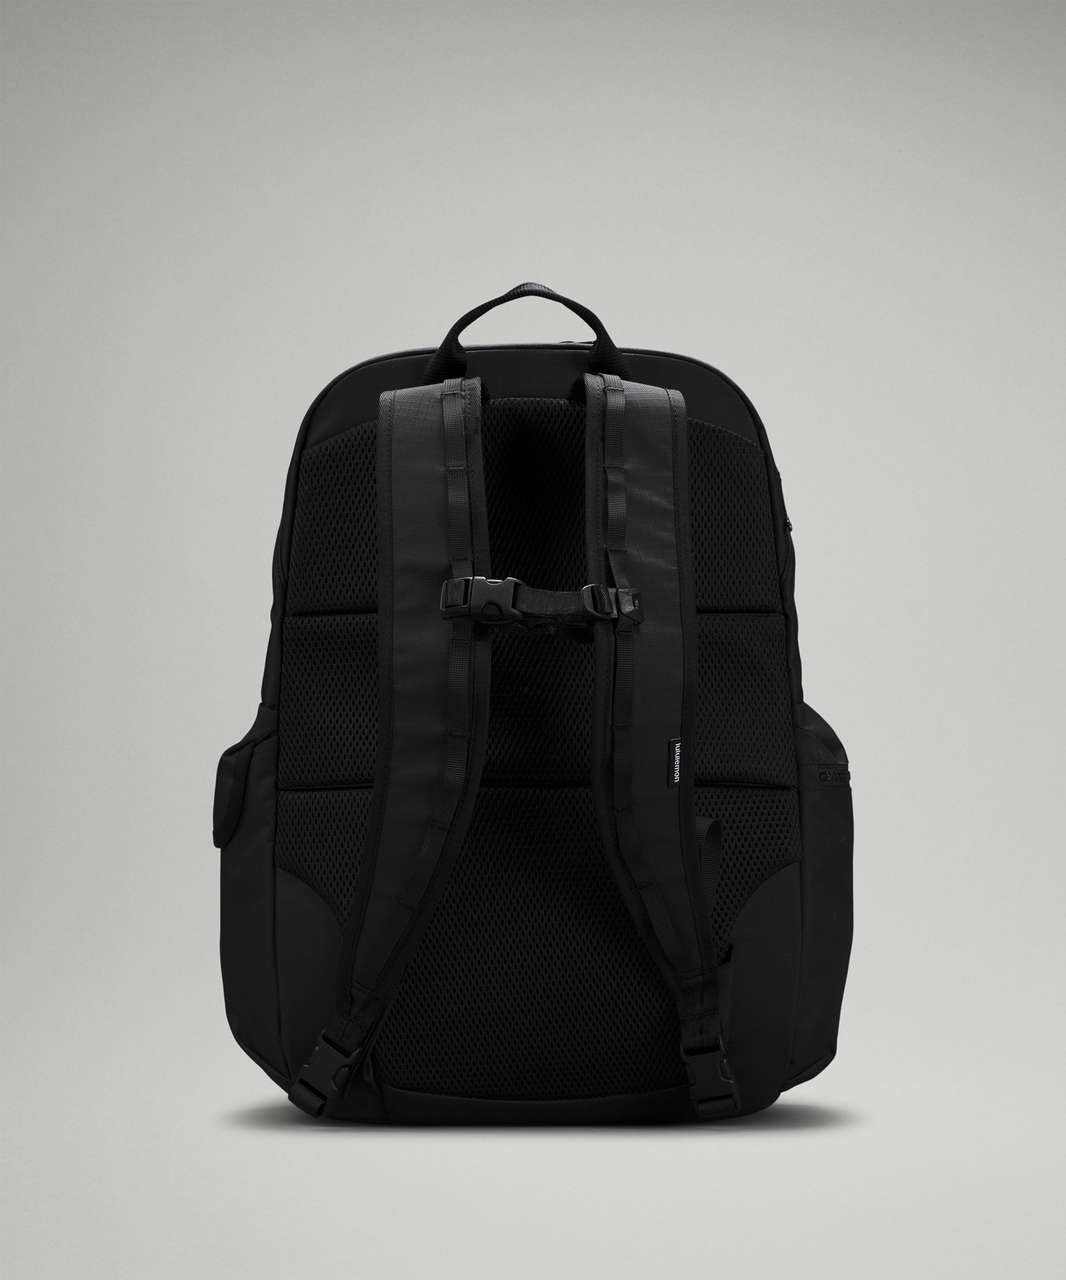 Lululemon Cruiser Large Backpack 28L - Black / Rhino Grey